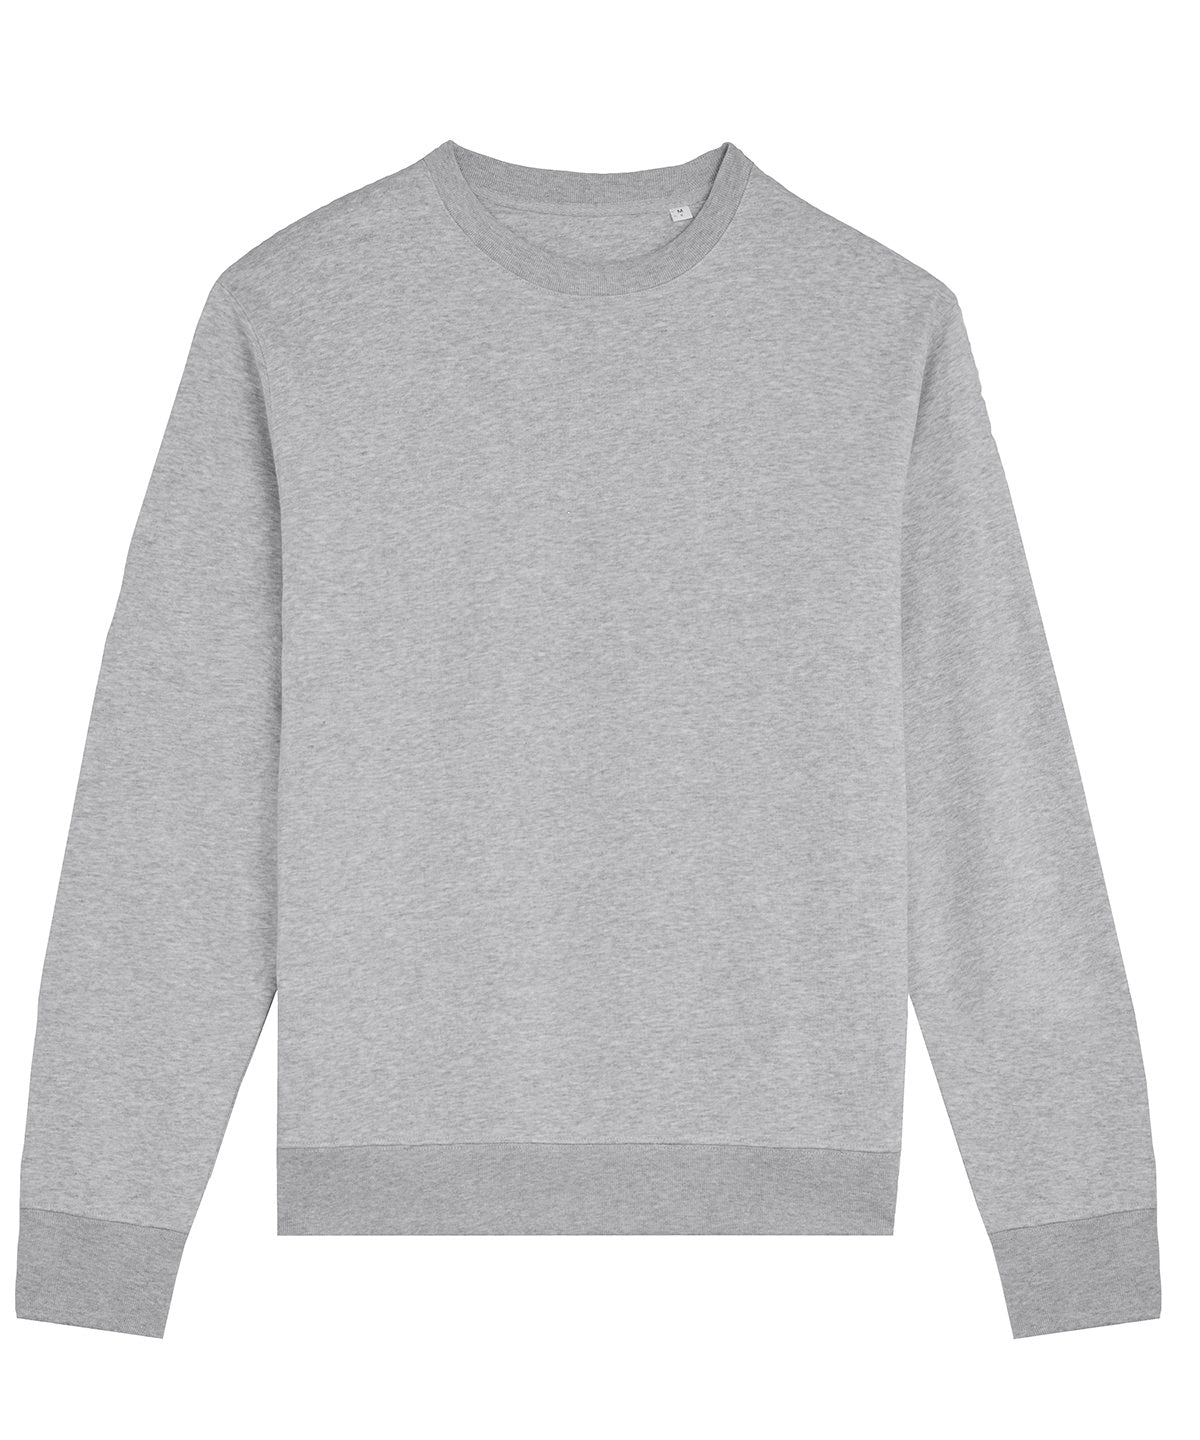 Háskólapeysur - Unisex Matcher Sweatshirt (STSU799)